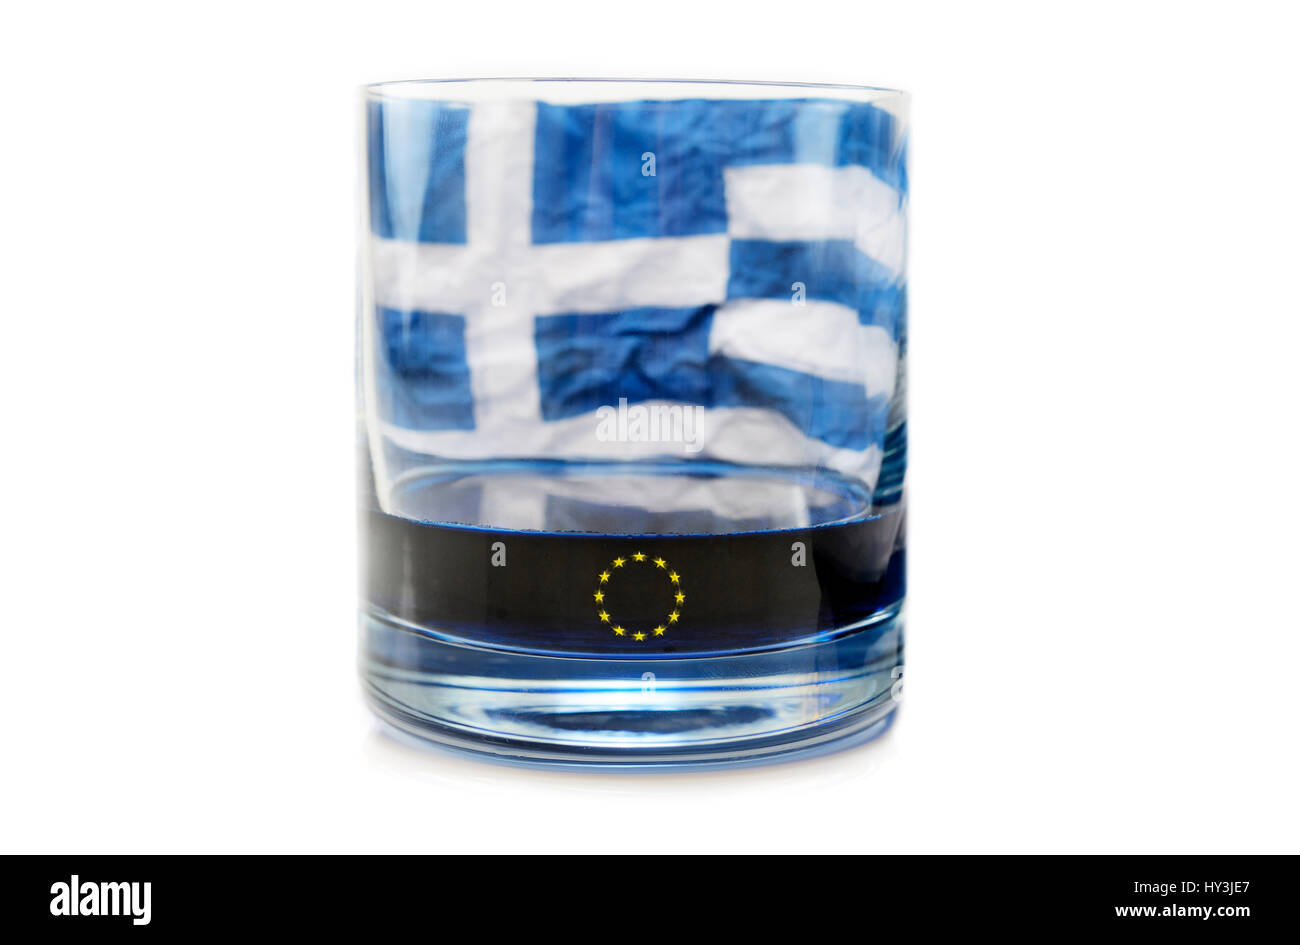 Half-empty glass with Greek flag, symbolic photo debt quarrel, Halbleeres Glas mit griechischer Fahne, Symbolfoto Schuldenstreit Stock Photo